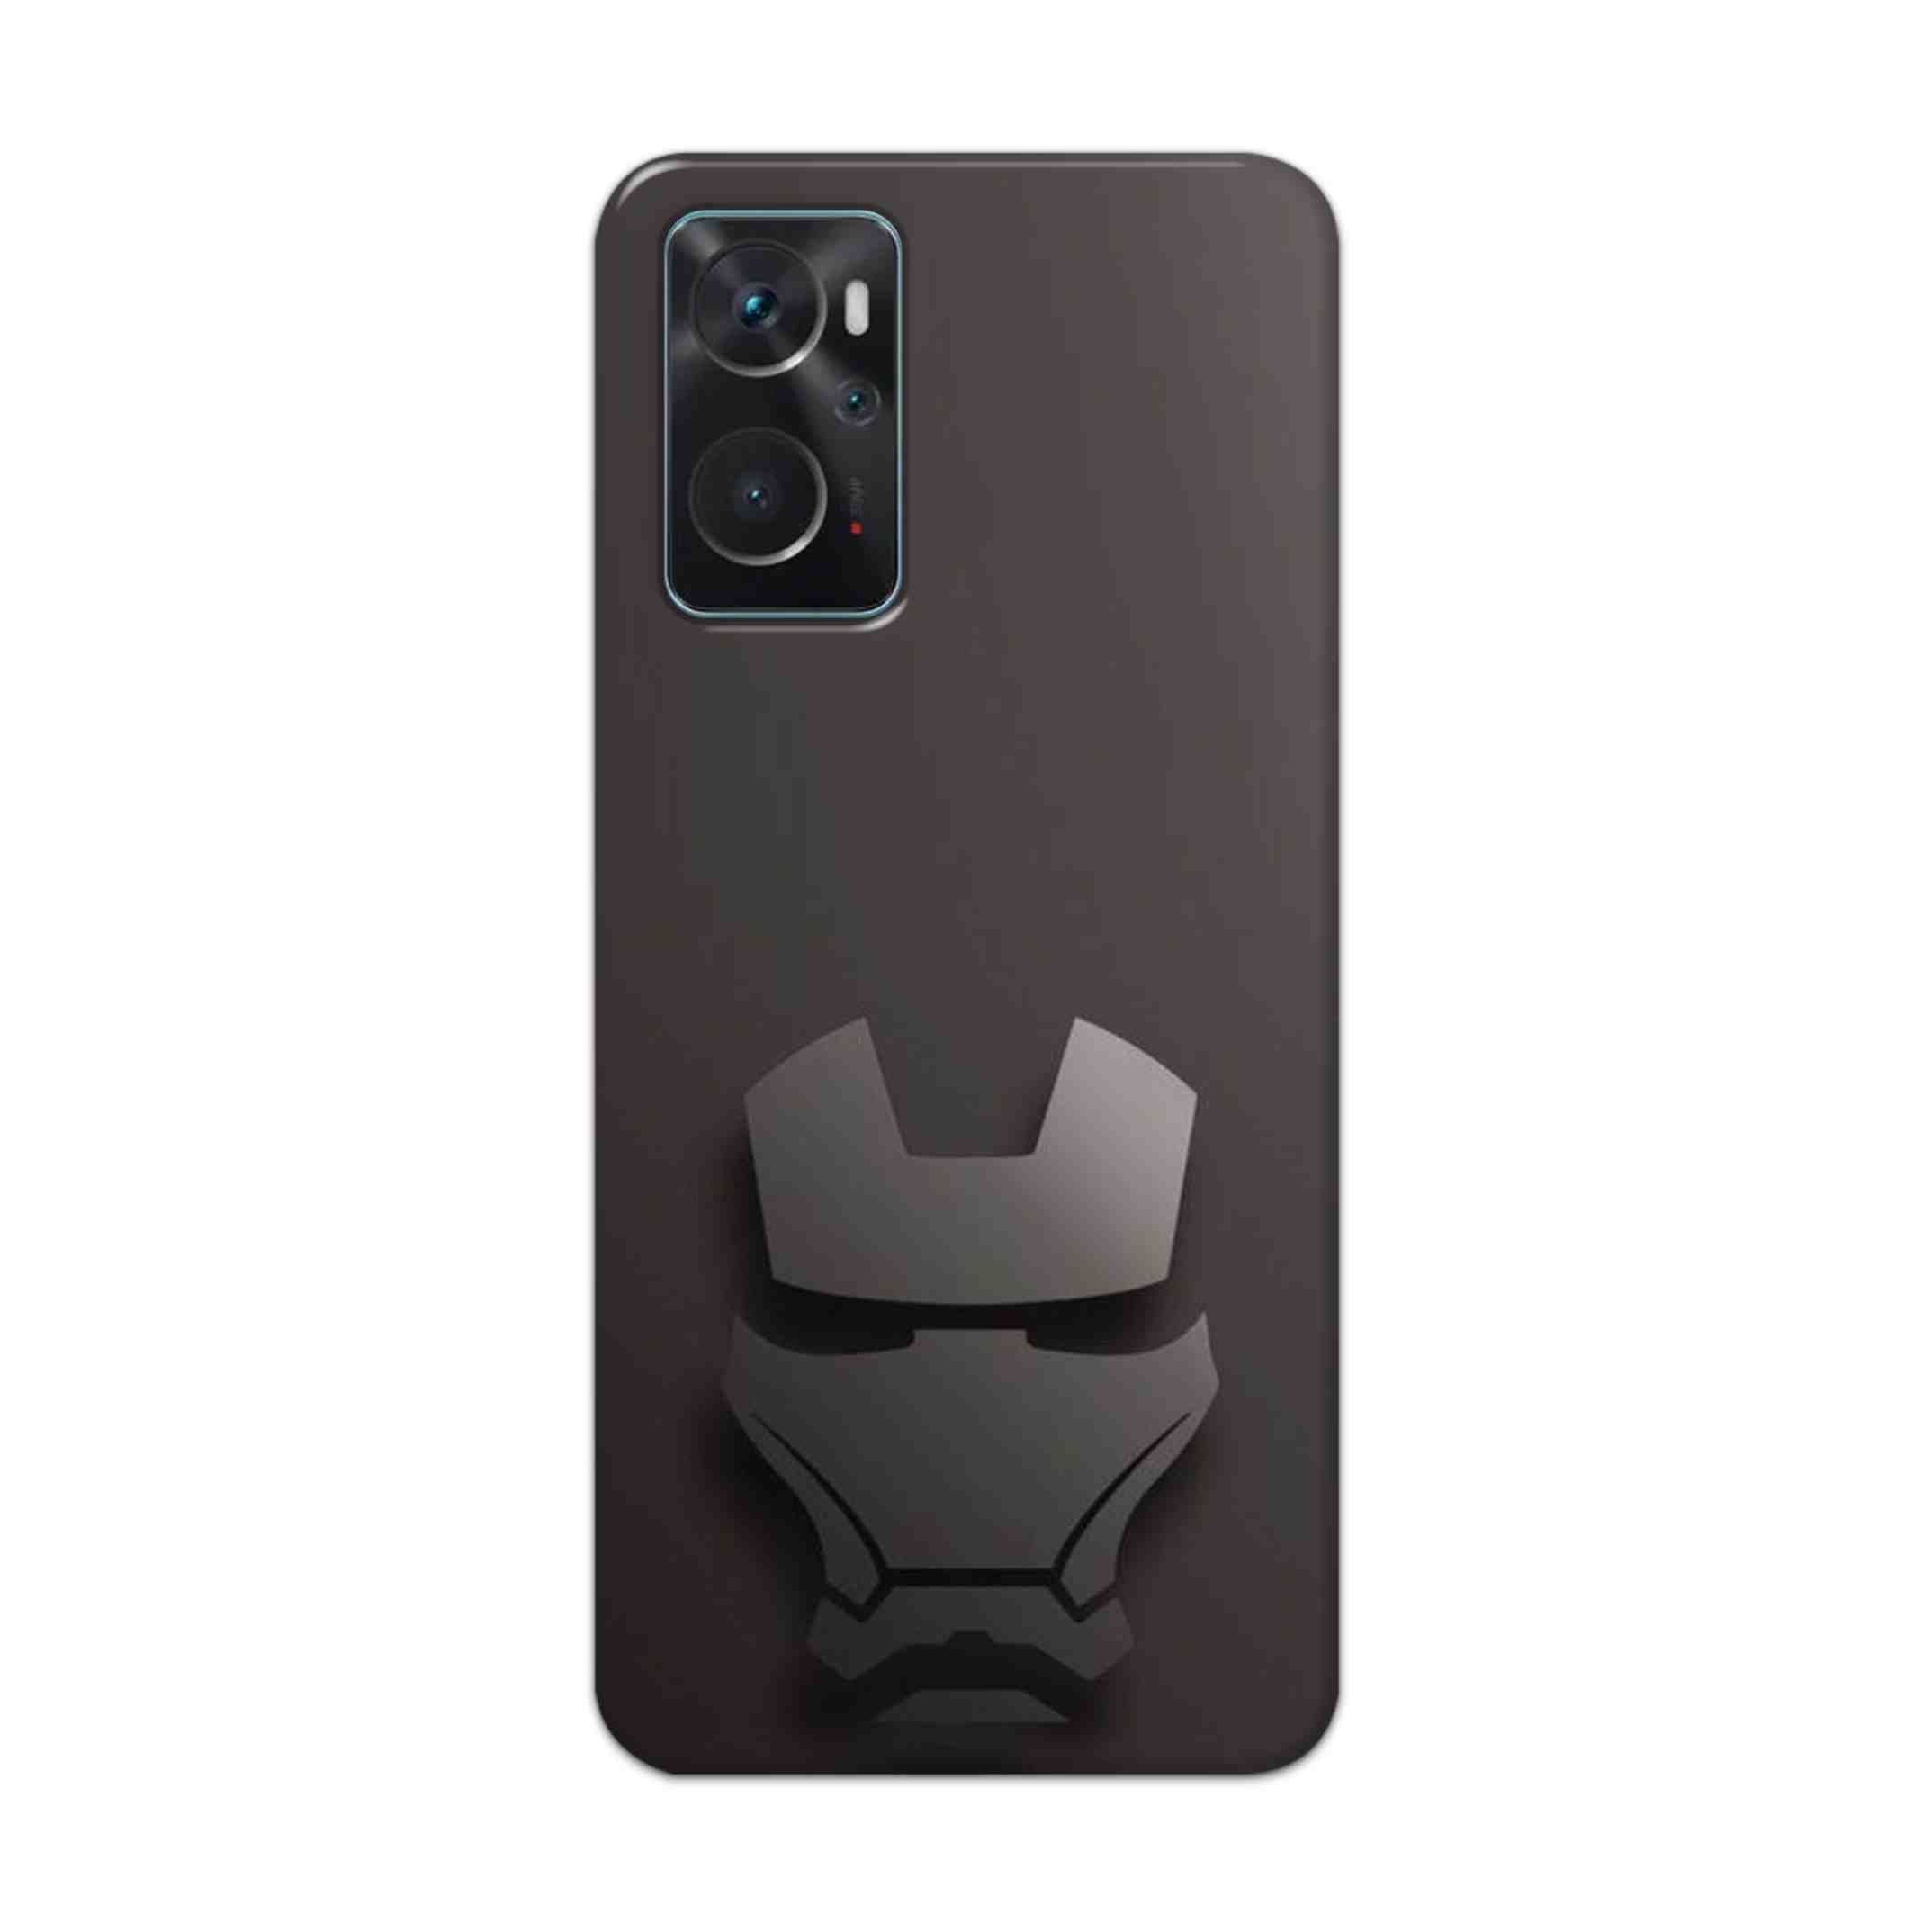 Buy Iron Man Logo Hard Back Mobile Phone Case Cover For Oppo K10 Online